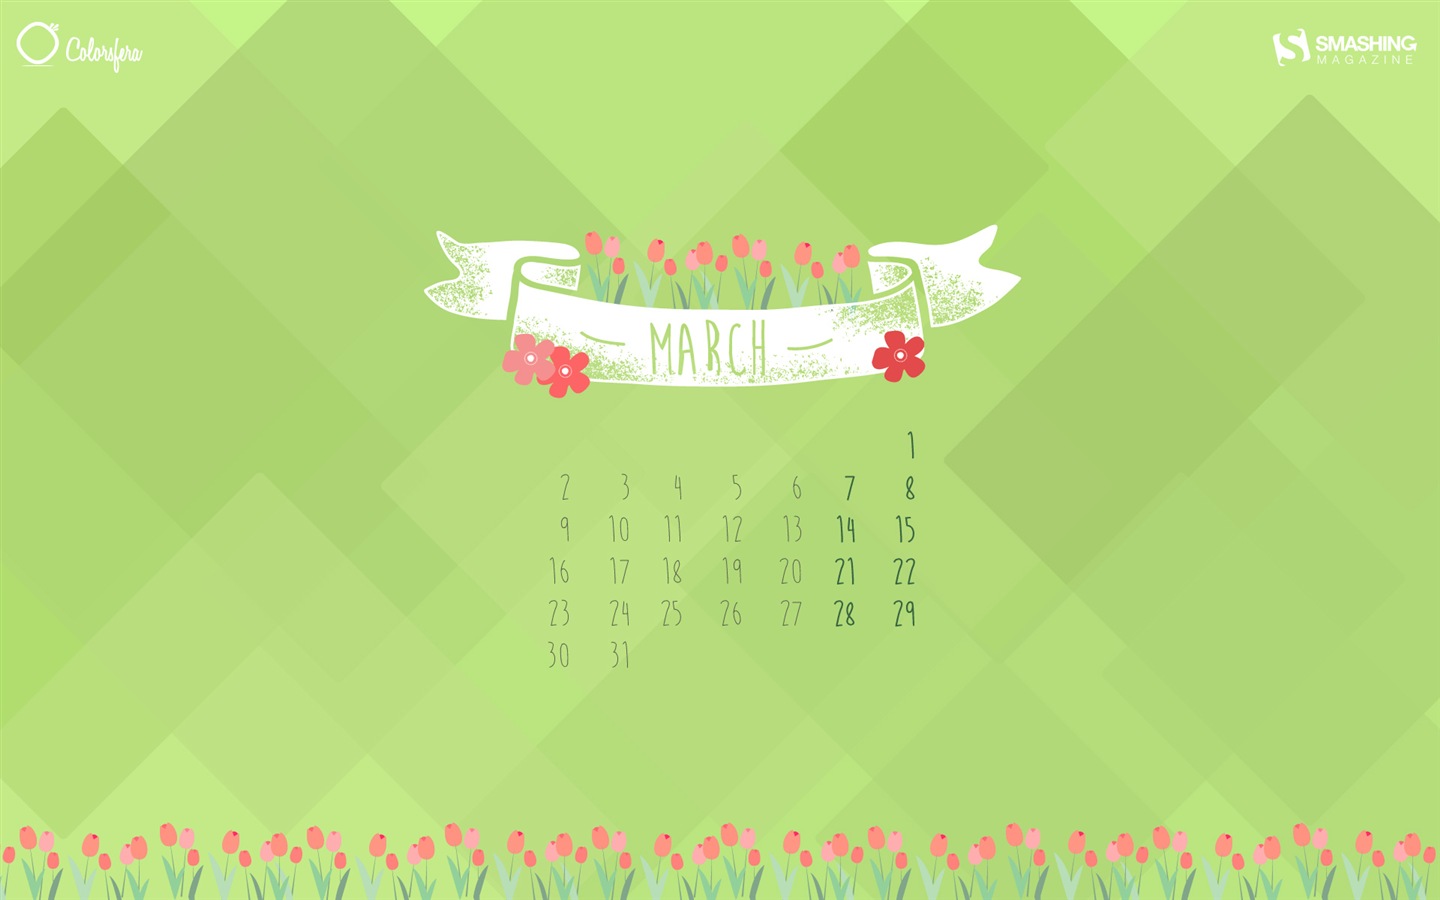 March 2015 Calendar wallpaper (2) #2 - 1440x900